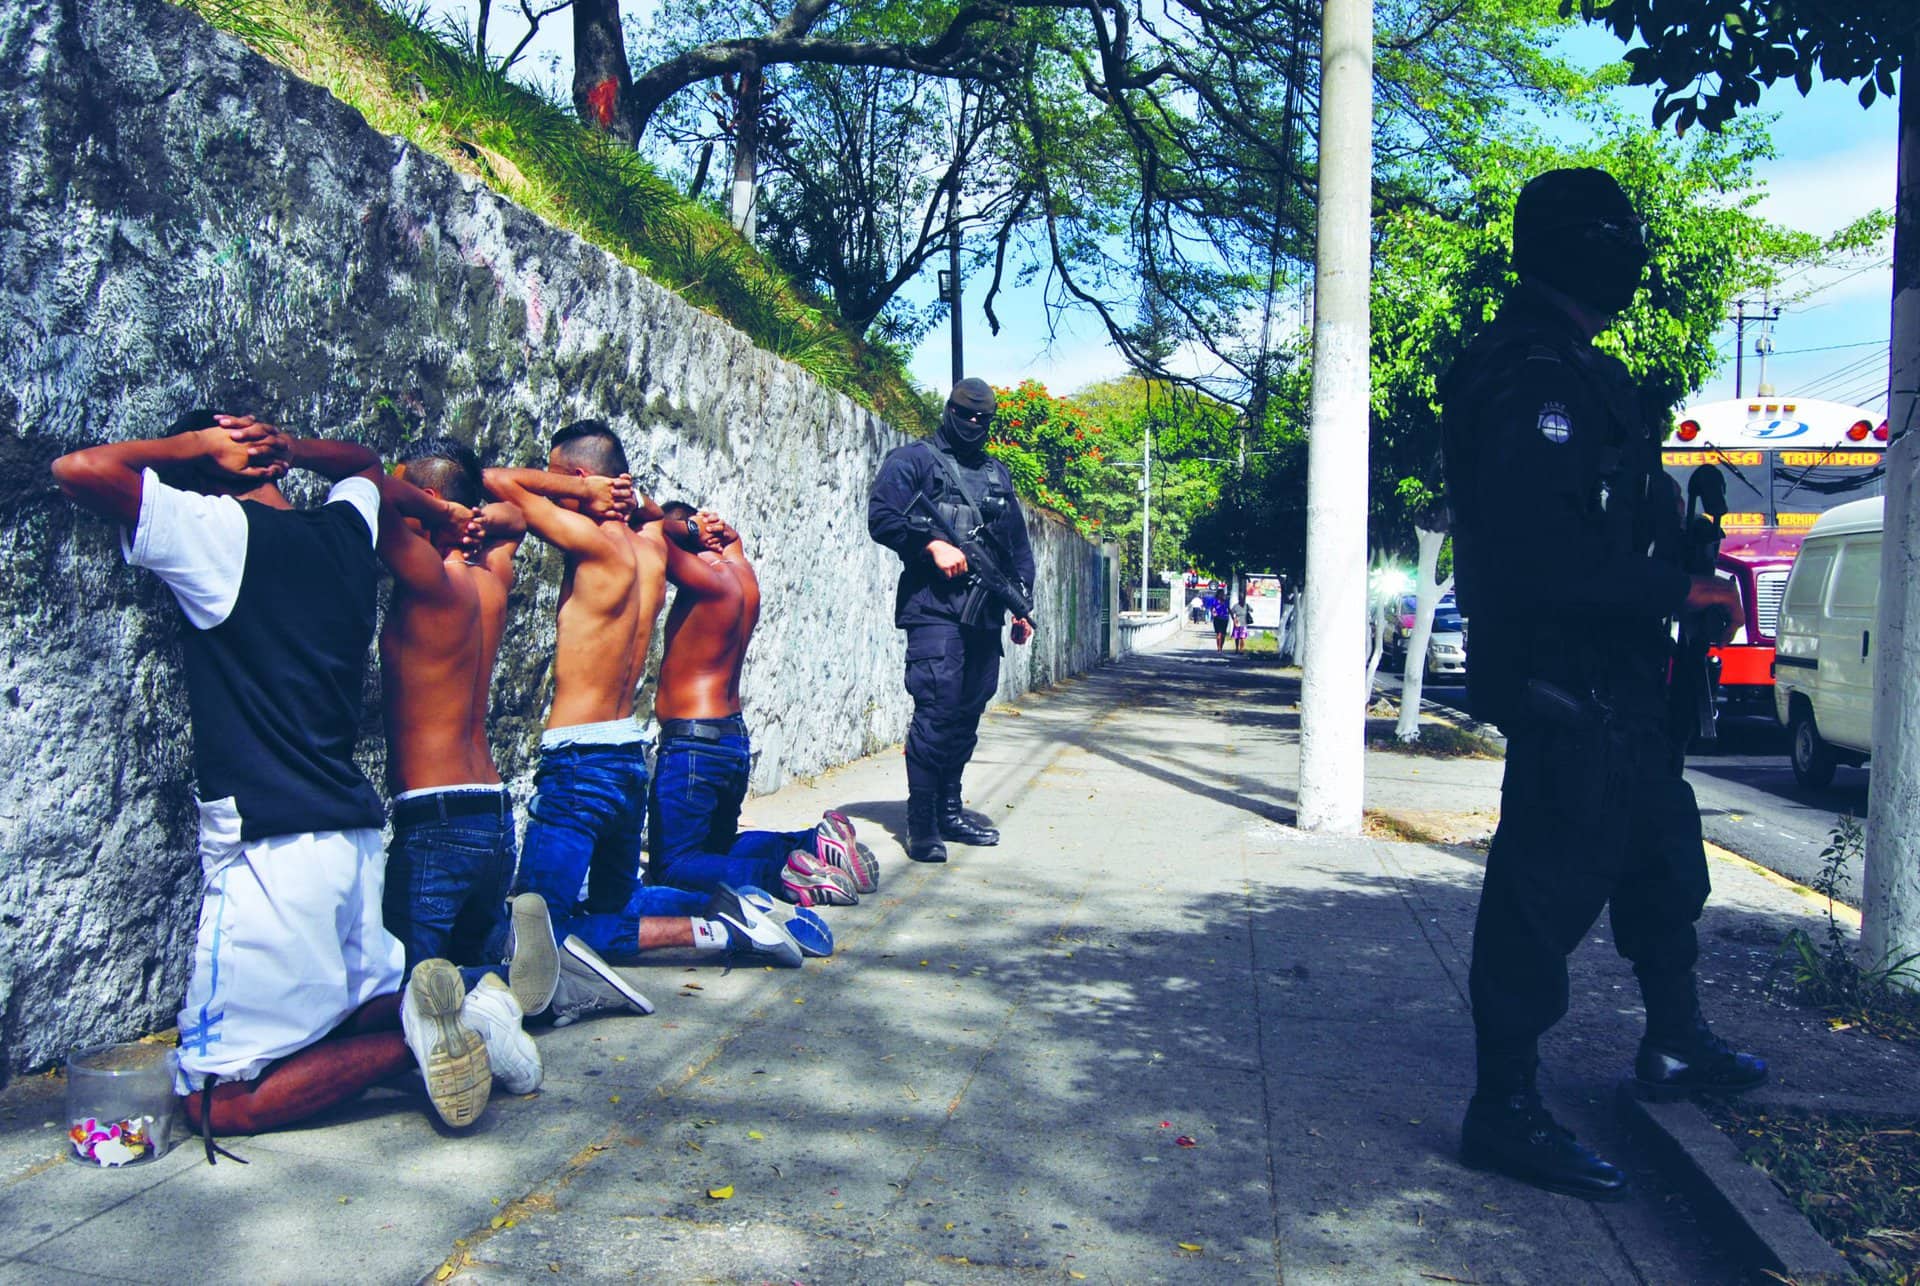 Jugendliche im Fadenkreuz: Vielerorts gehören Repression und Polizeigewalt zum Alltag. Foto: José Ramiro Laínez Sorto